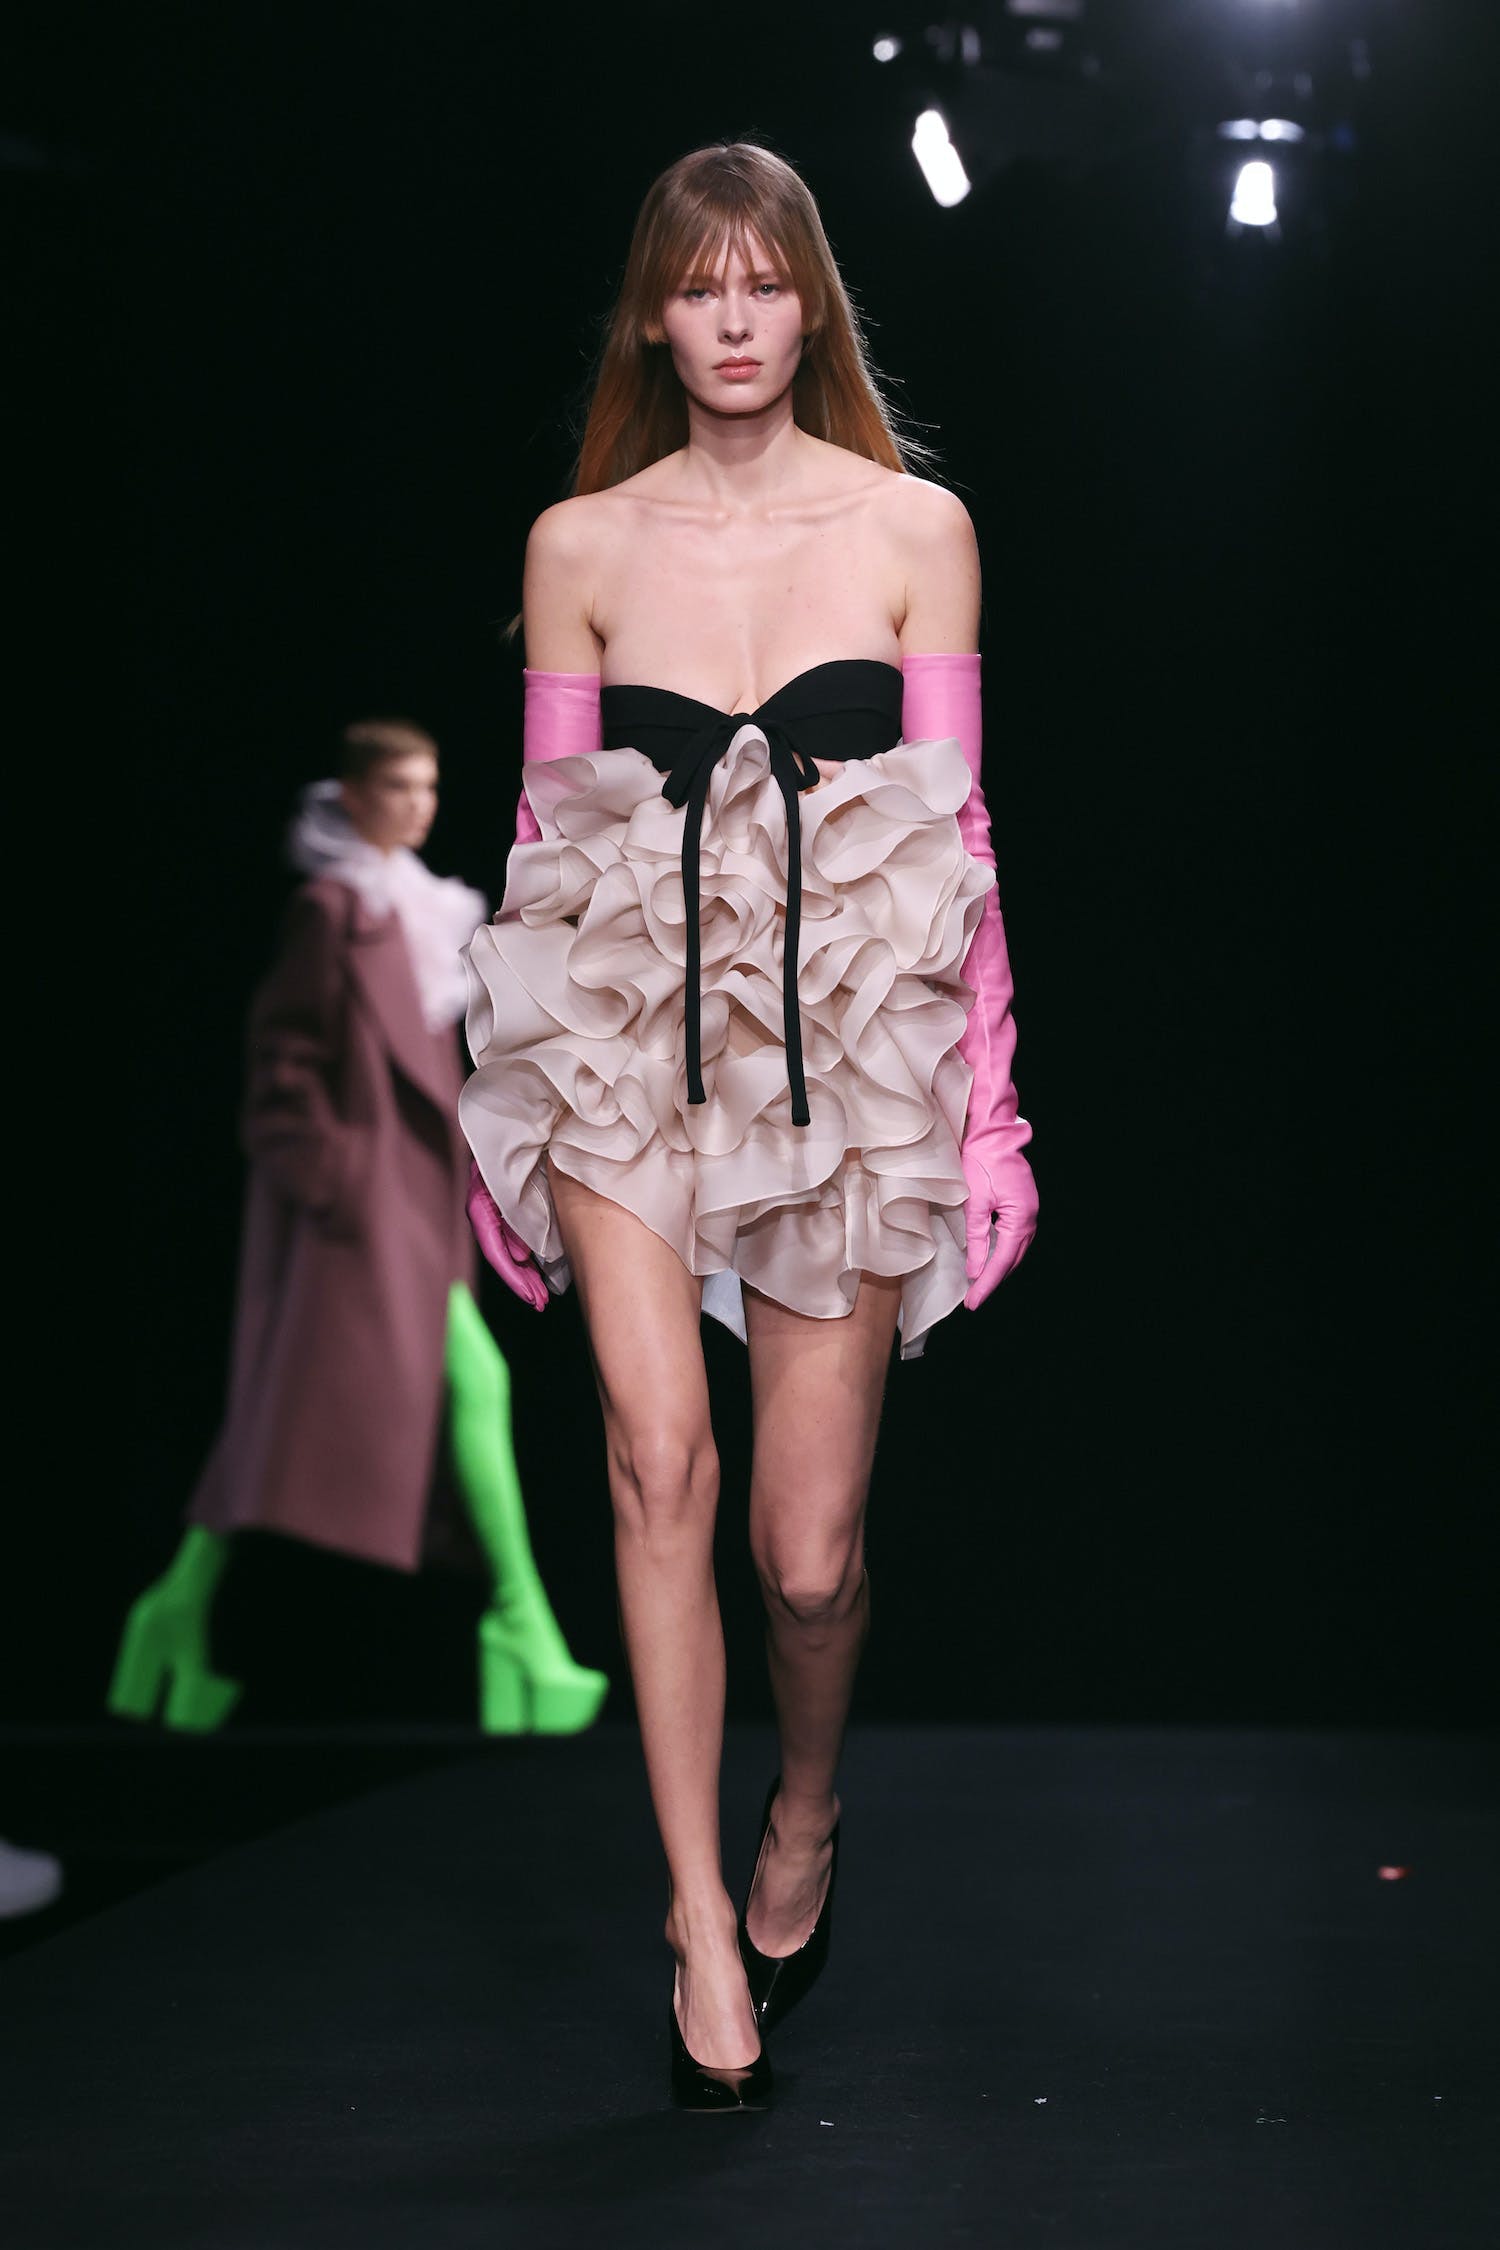 Váy áo xa xỉ đẹp diễm lệ, mãn nhãn giới mộ điệu của Valentino Haute Couture - 3